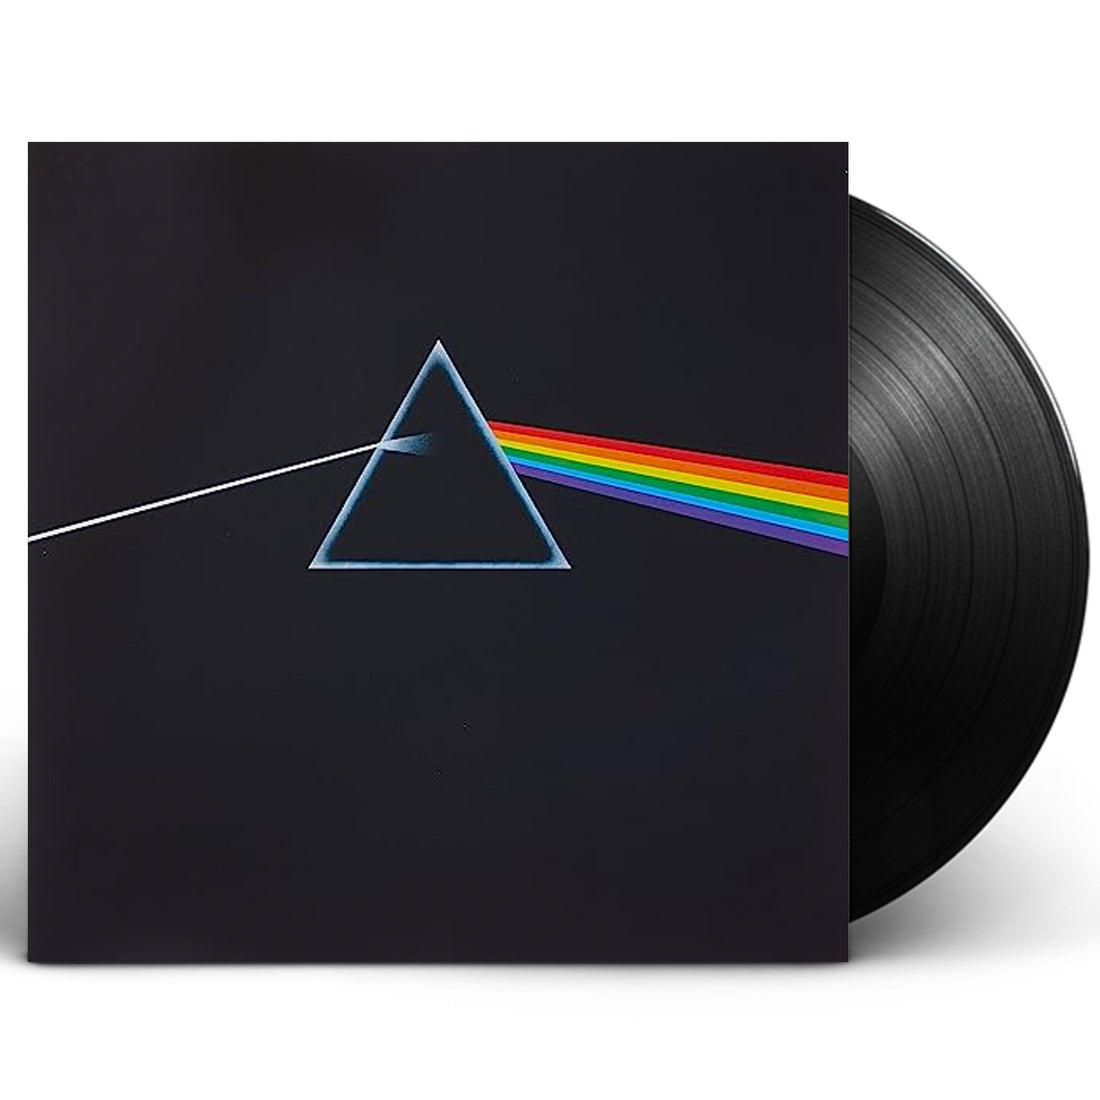 Pink Floyd "Dark Side of the Moon" 180 Gram LP Vinyl